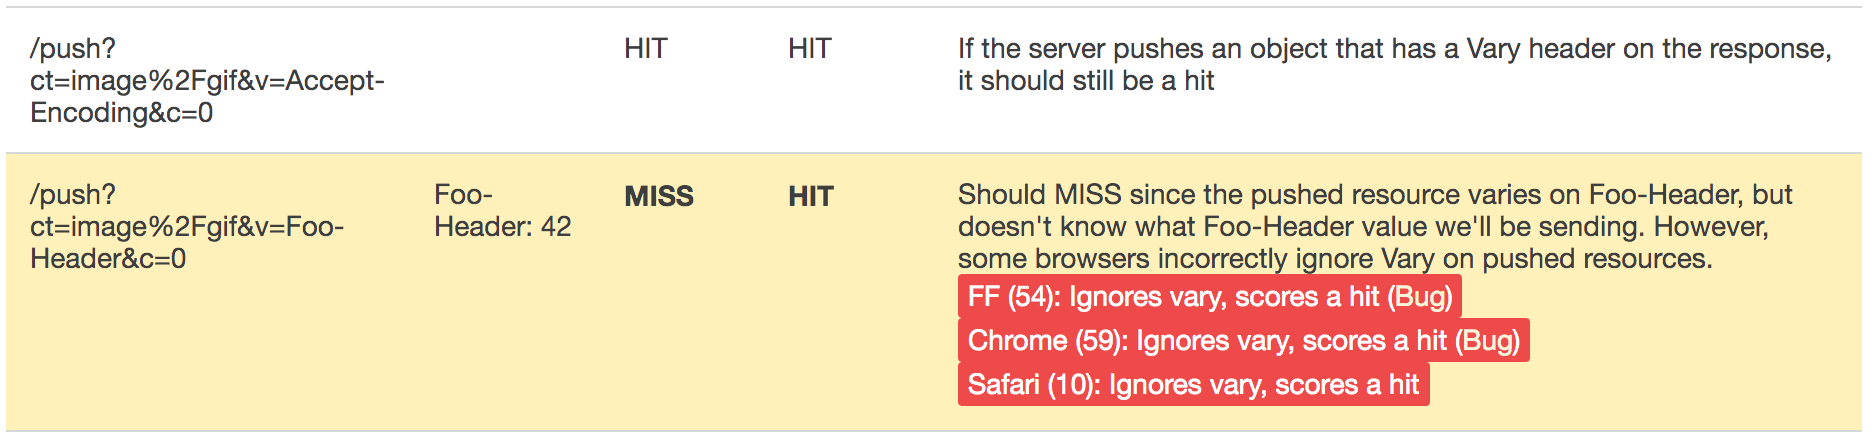 HTTP/2 push cache